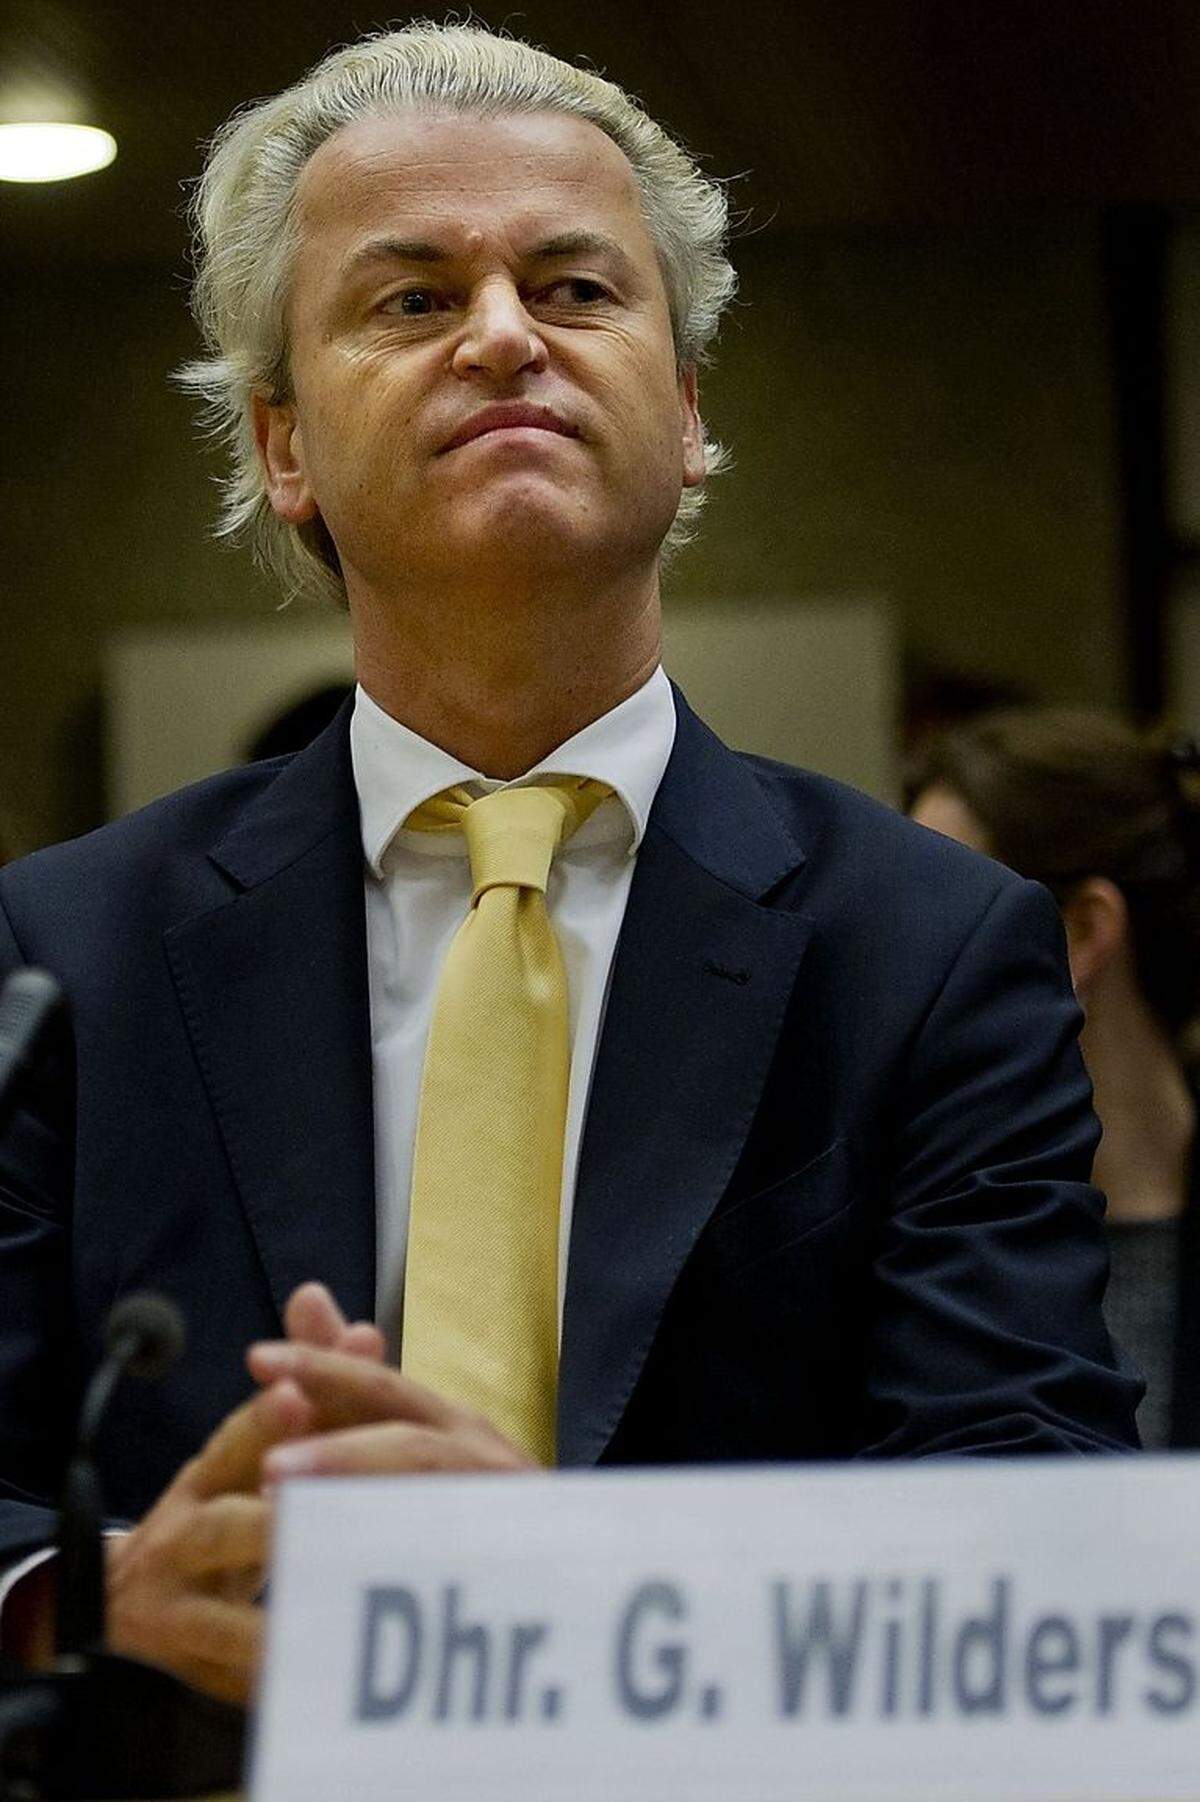 Der Vorsitzende der niederländischen PVV, Geert Wilders, sorgte erst vor wenigen Wochen für Irritationen. Er versprach bei einer Rede vor Anhängern in Den Haag, dass er die eingewanderten Marokkaner „wegorganisieren“ werde. Die Äußerung löste eine Flut von Parteiaustritten und Anzeigen bei der Staatsanwaltschaft wegen Verhetzung aus. Wilders verwies auf die Meinungsfreiheit und beschuldigte die Medien, ihn als Nazi darzustellen. Ähnlich wie andere rechte Politiker in Europa nutzt aber auch er gern Vergleiche mit dem Nationalsozialismus. Im August 2007 beispielsweise verglich Wilders den Koran mit Hitlers „Mein Kampf“.